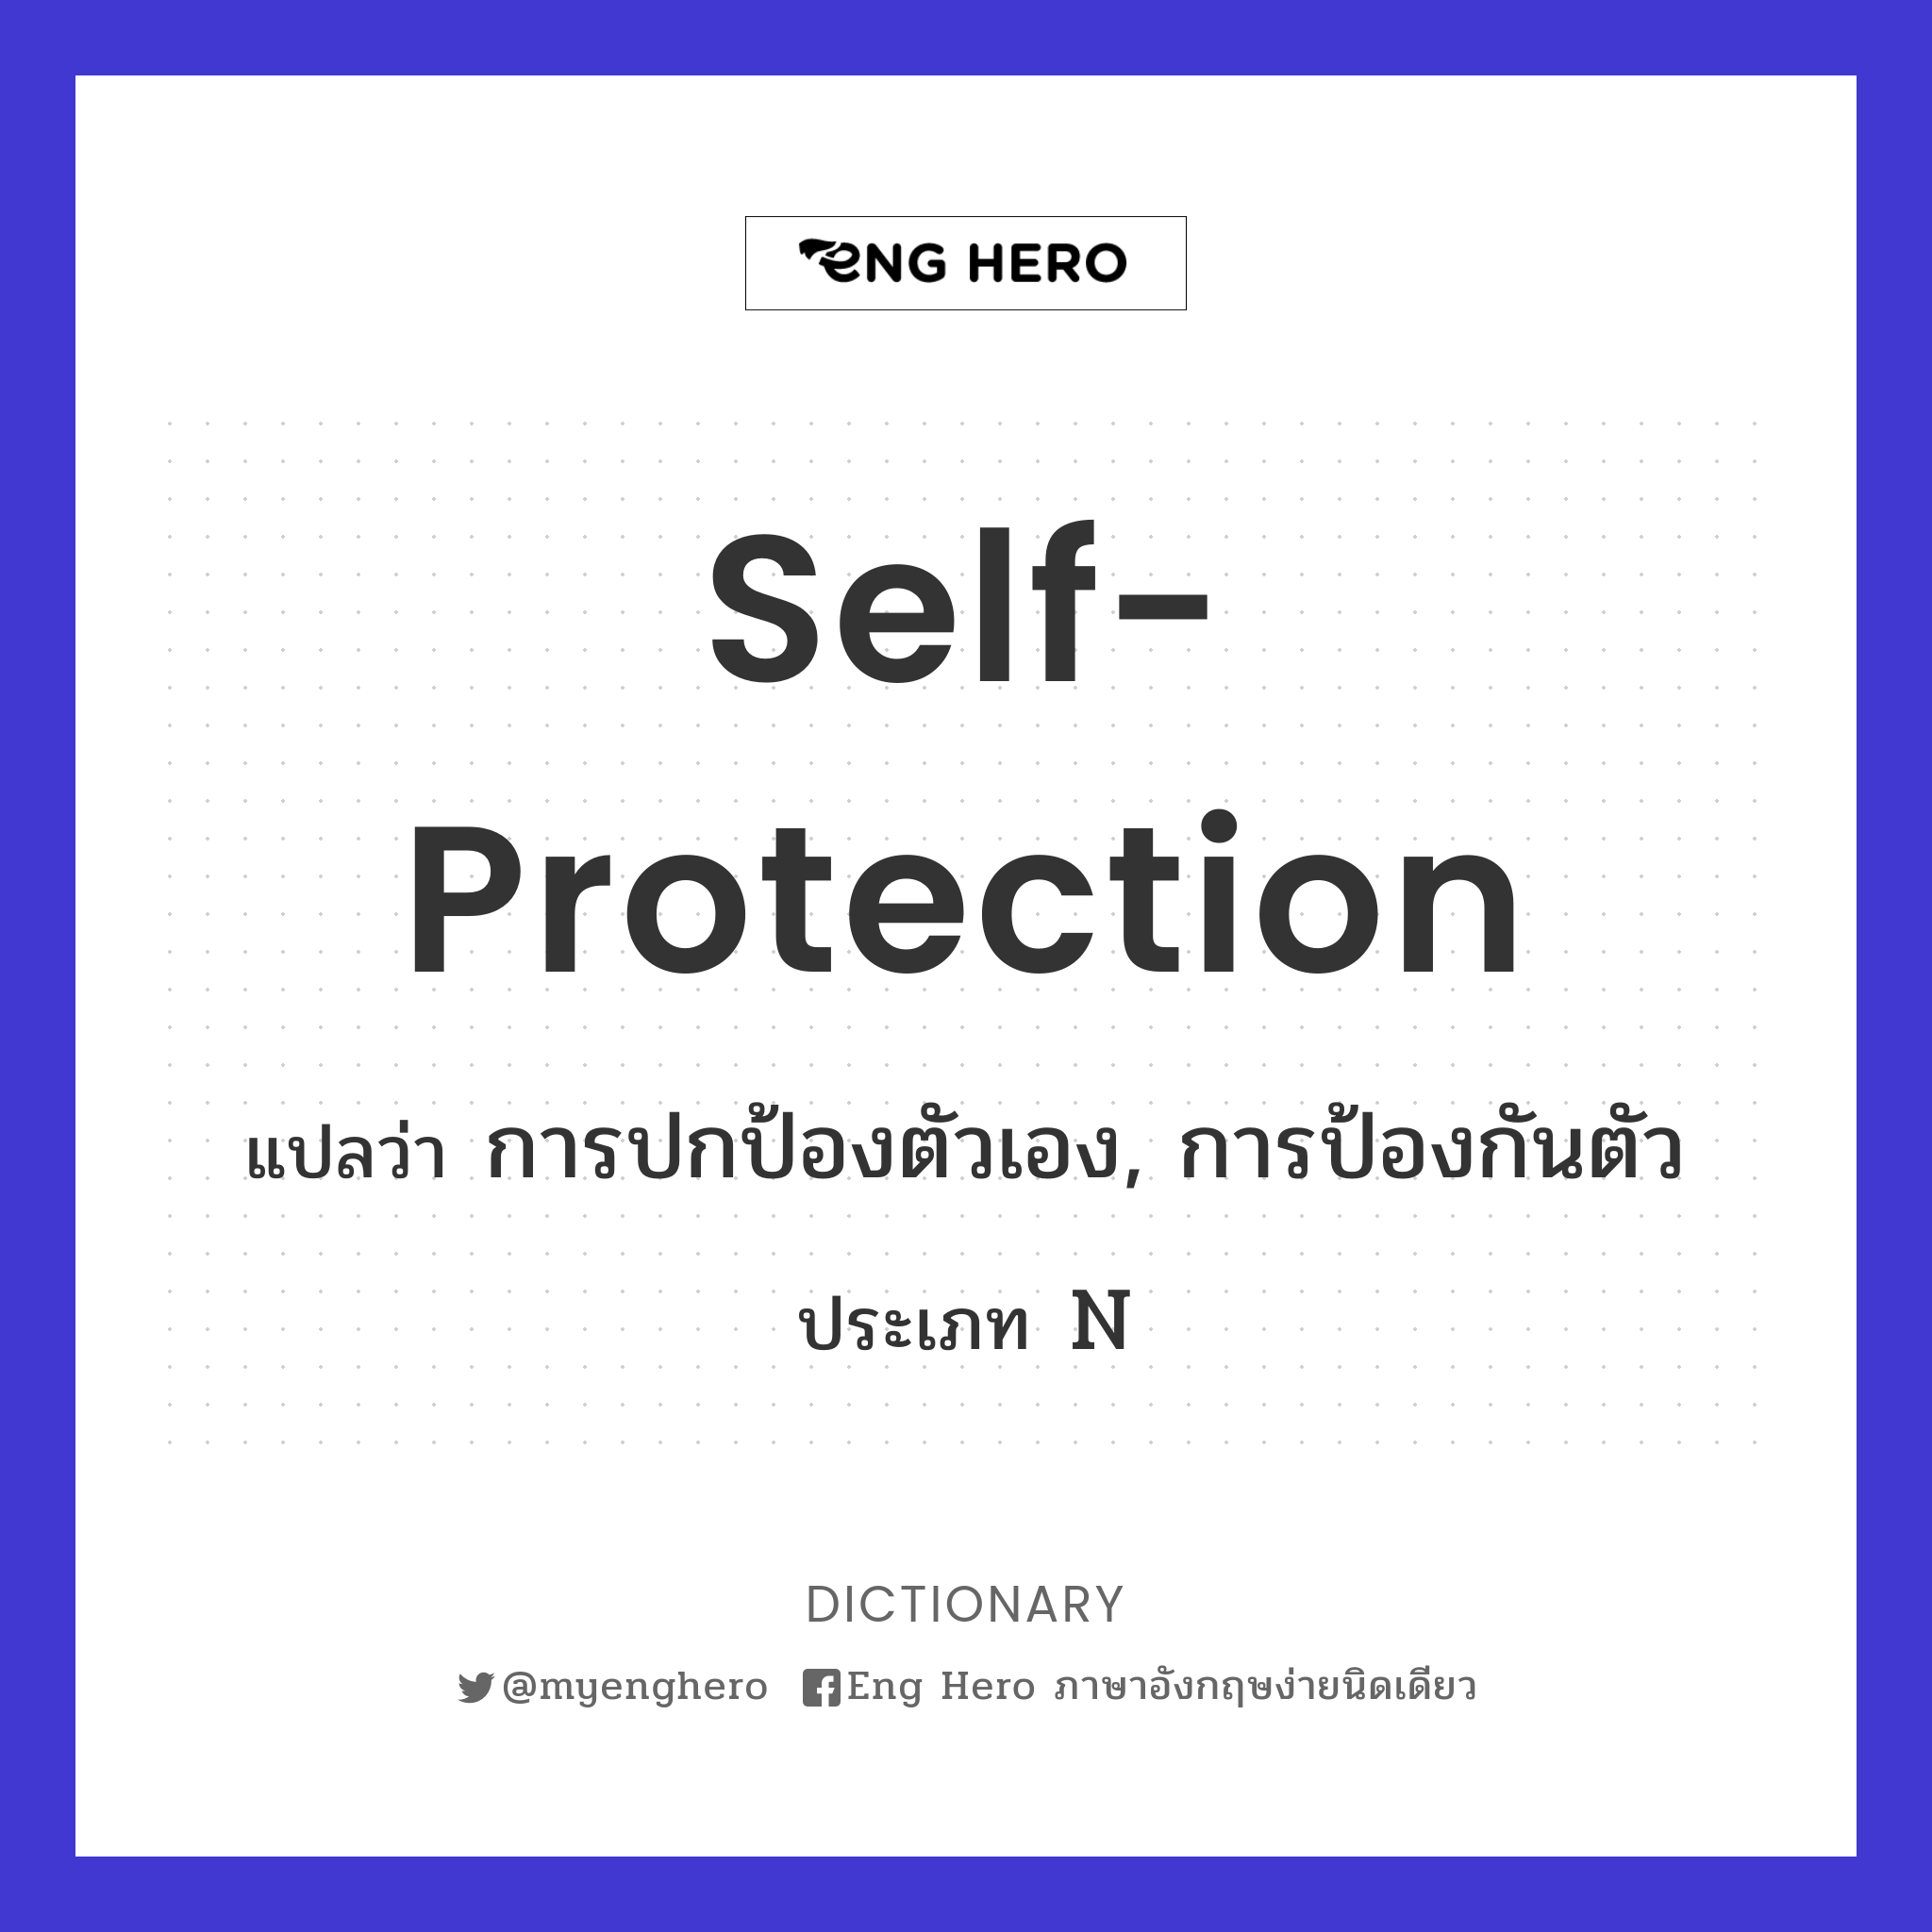 self-protection